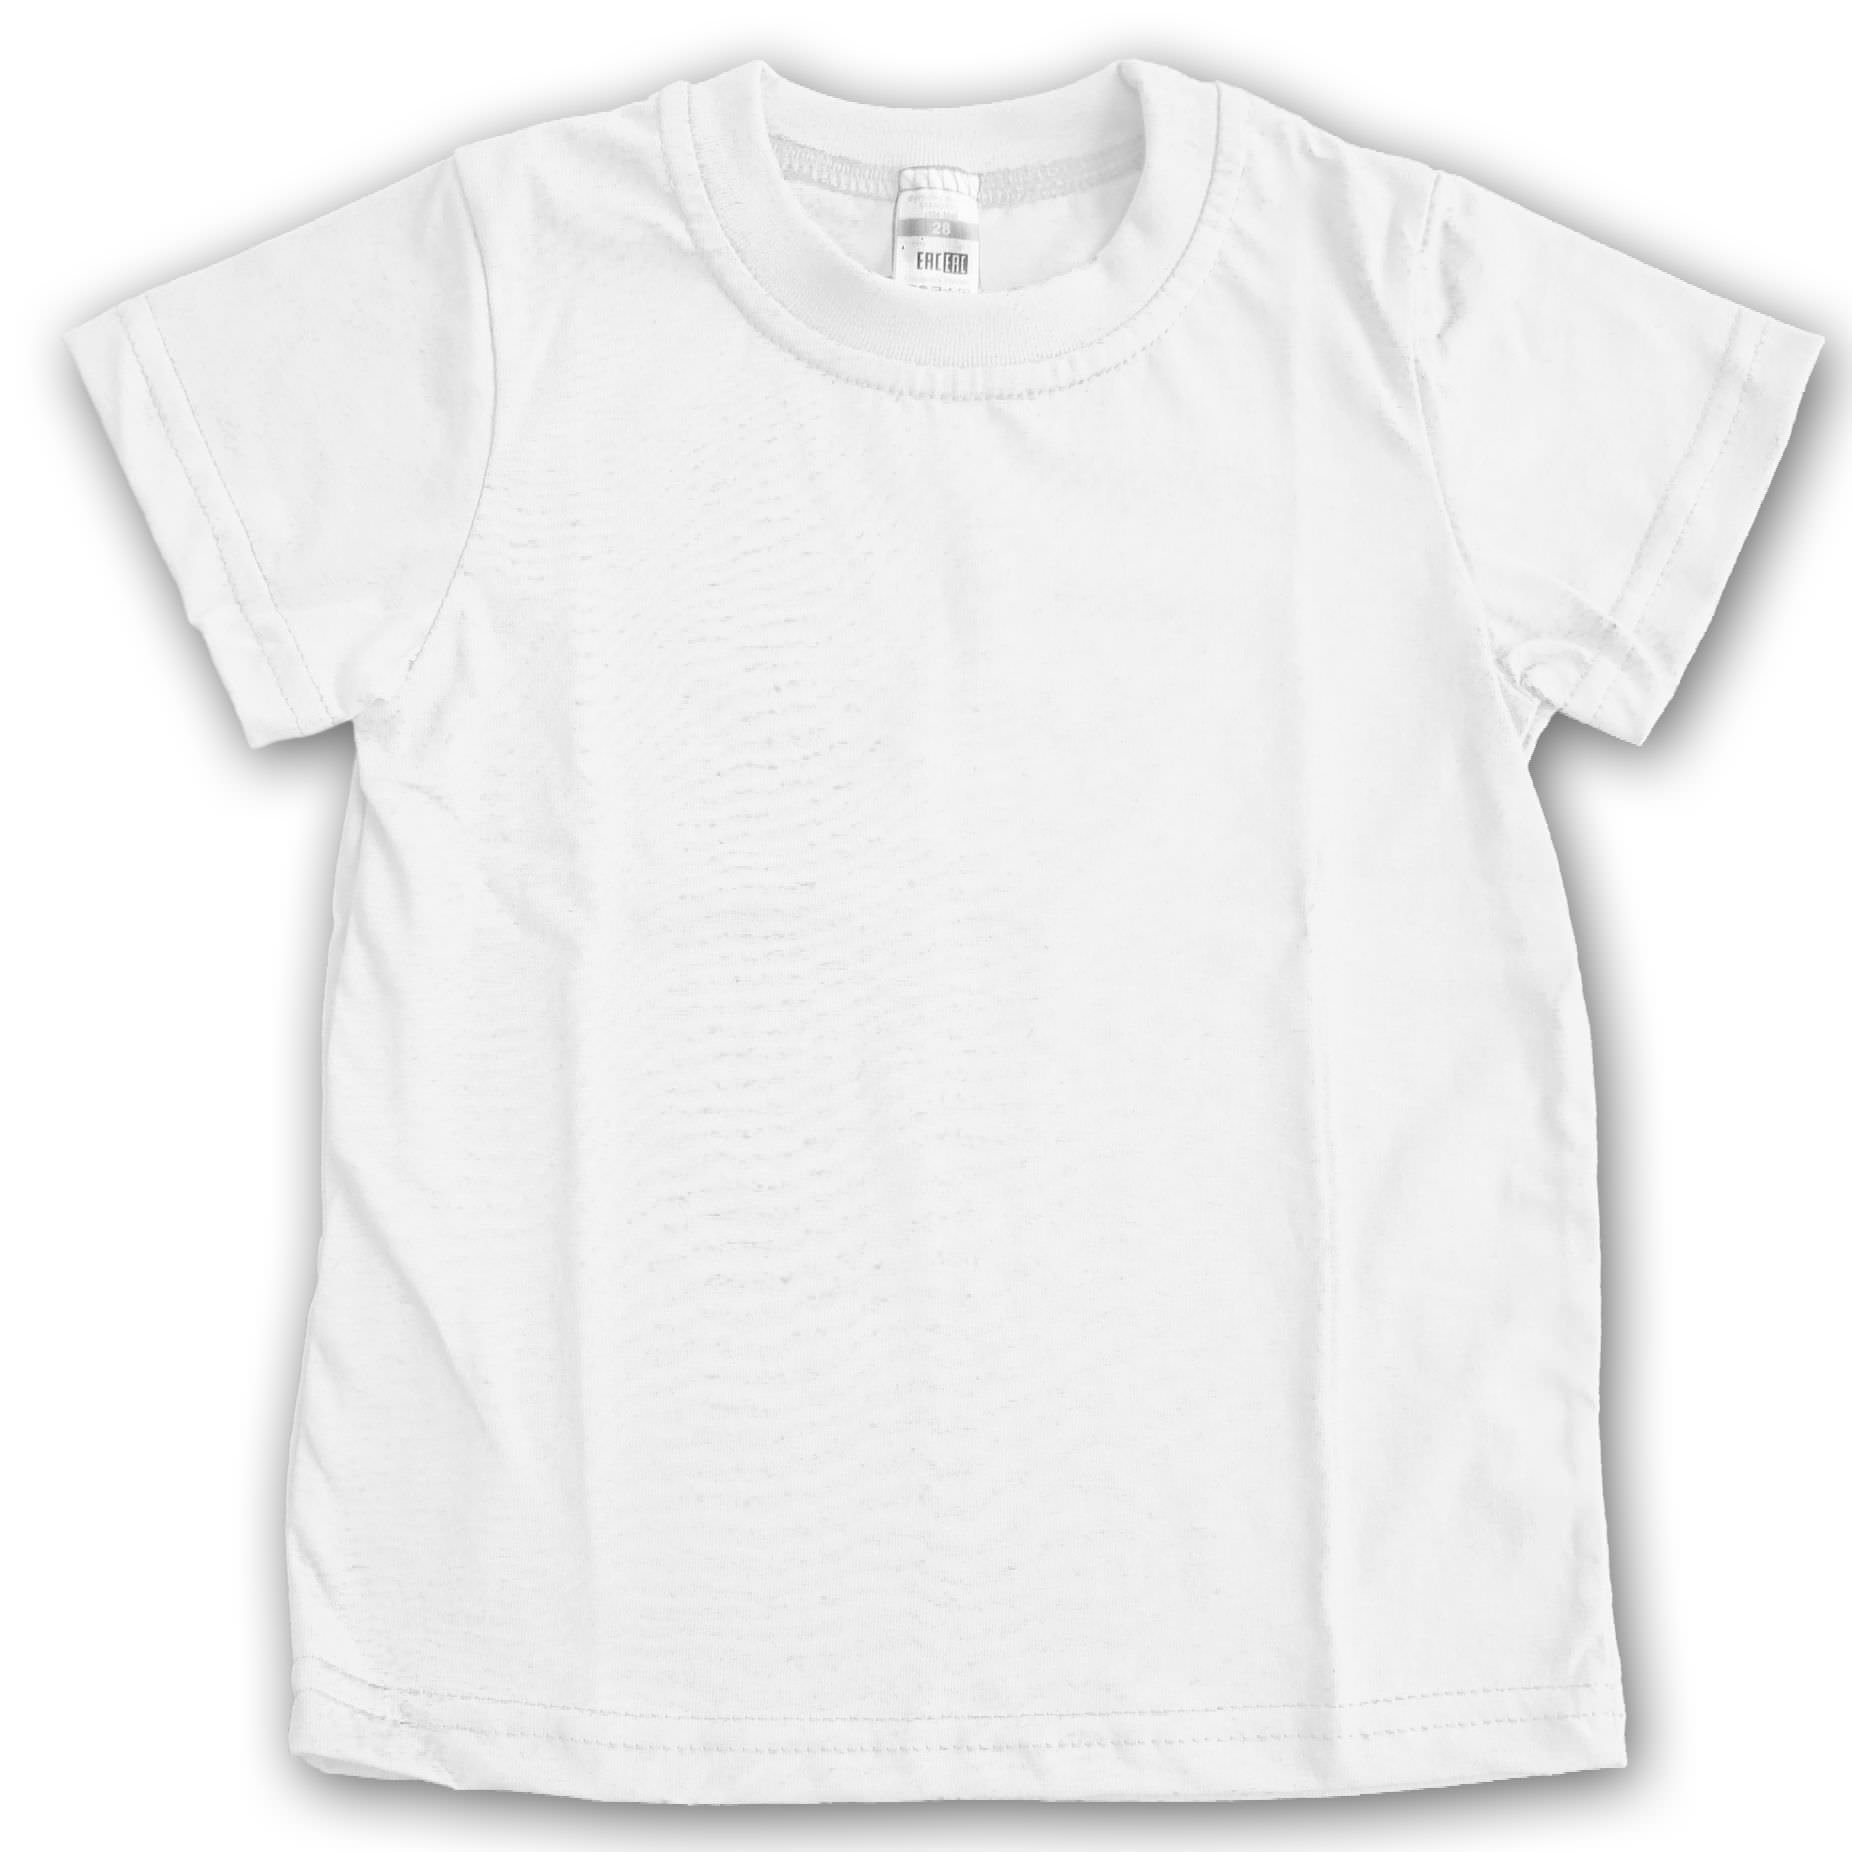 Белая детская футболка купить. Белая футболка. Белаяфут. "Детская белая футболка". Беллое футболка.